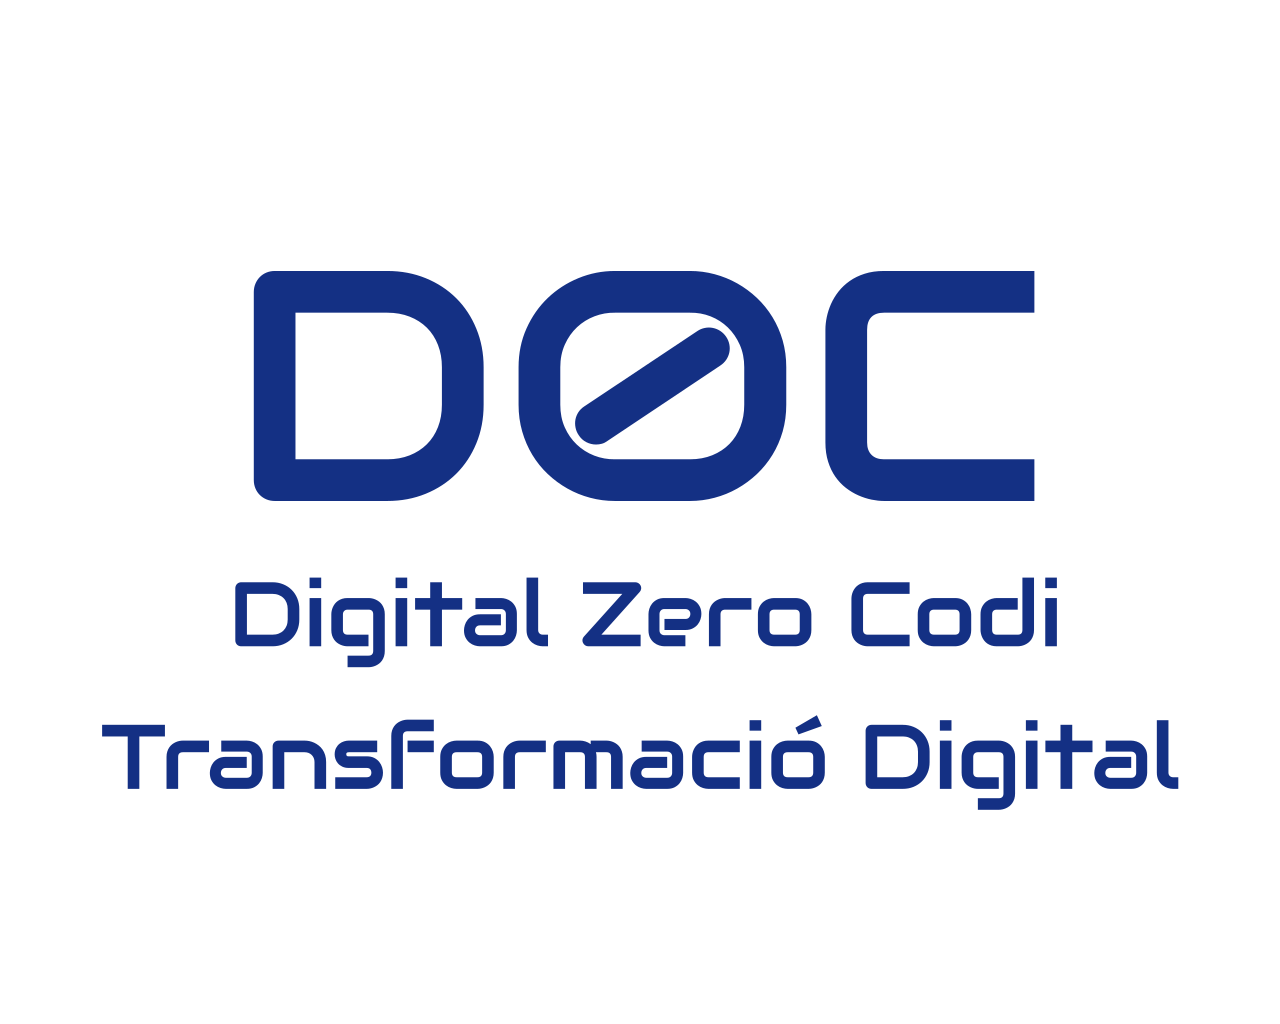 Digital Zero Codi, SL